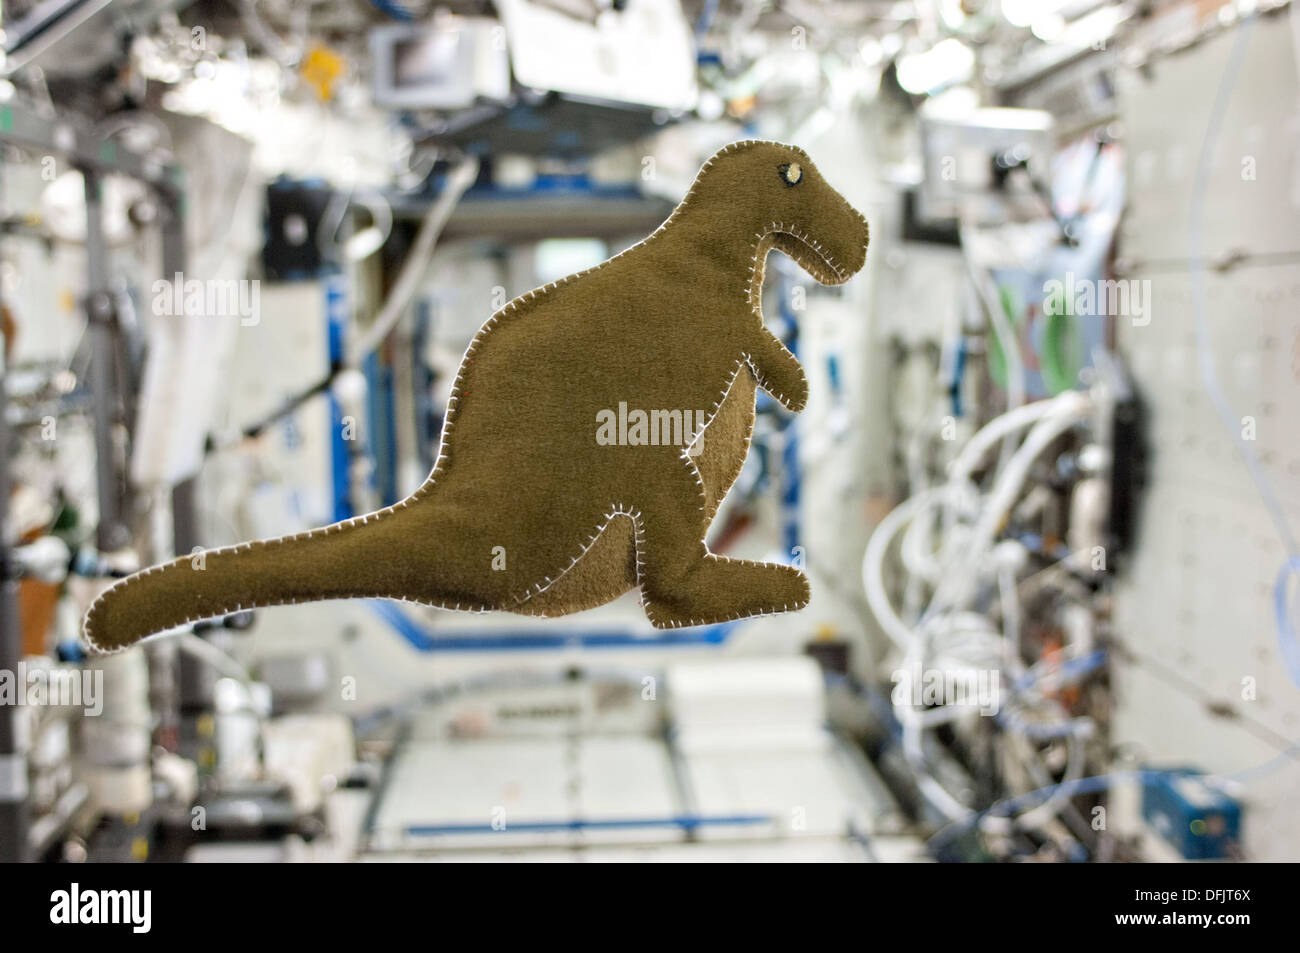 Un dinosauro farcite giocattolo realizzato da astronauta della NASA Karen Nyberg a bordo della Stazione Spaziale Internazionale da scarti di lavorazione del cibo-confezionamento camicie e una T-shirt galleggia liberamente nello spazio il 22 settembre 2013. Foto Stock